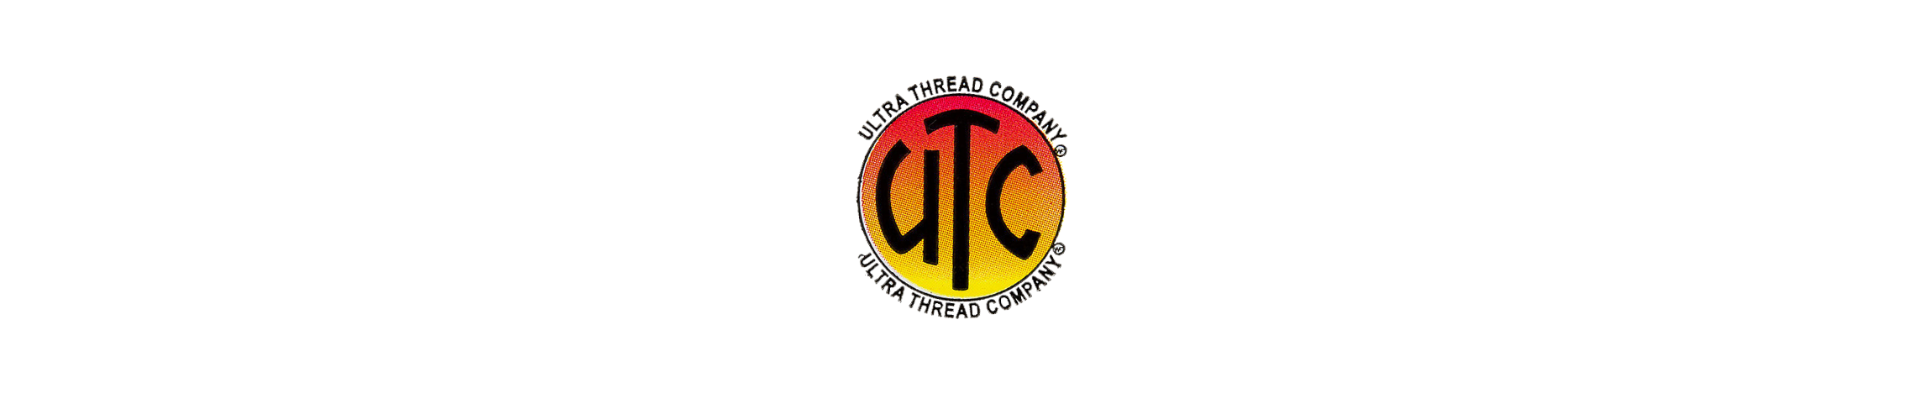 Ultra Thread Co